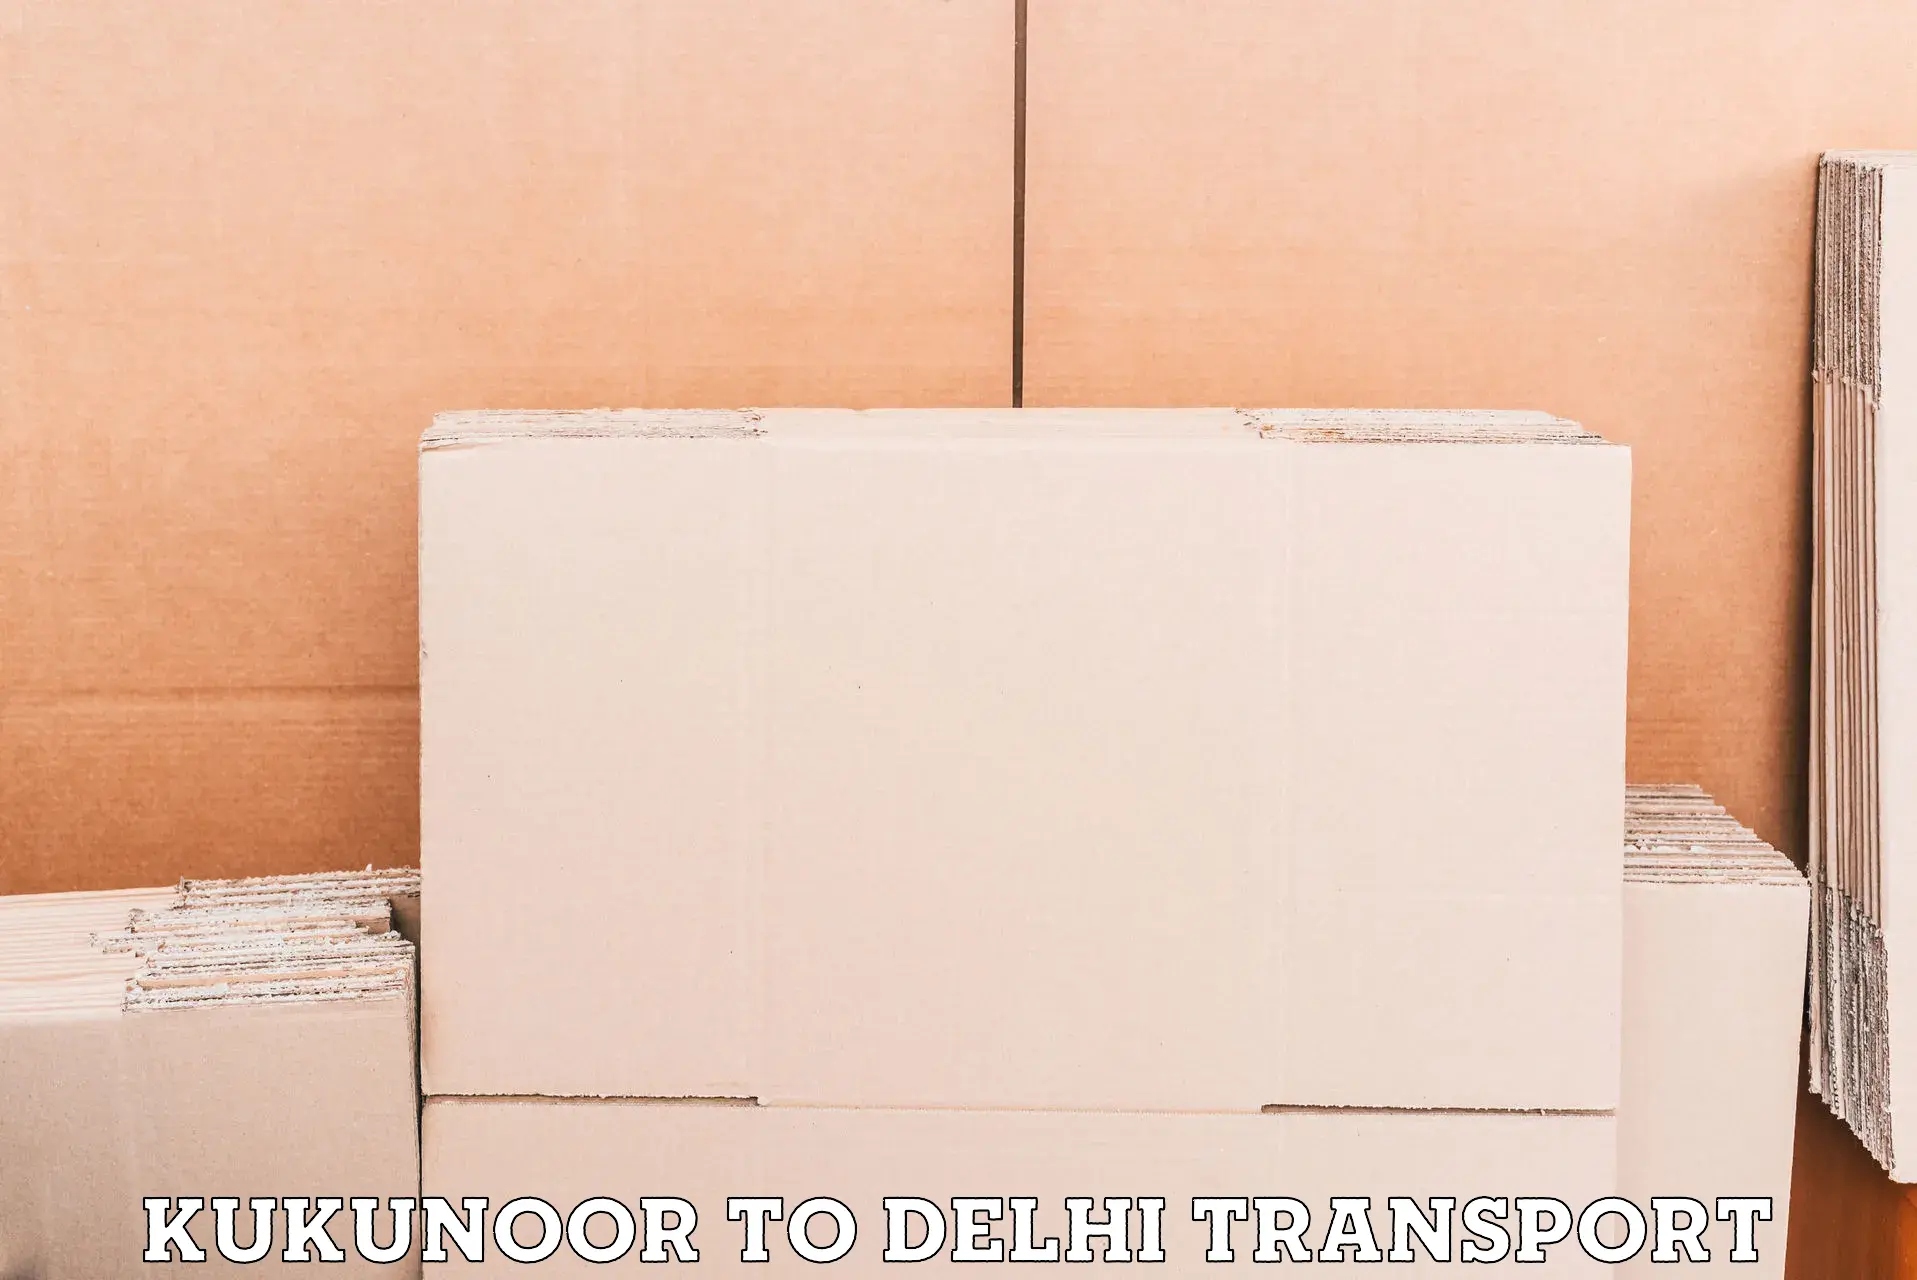 Online transport booking Kukunoor to IIT Delhi